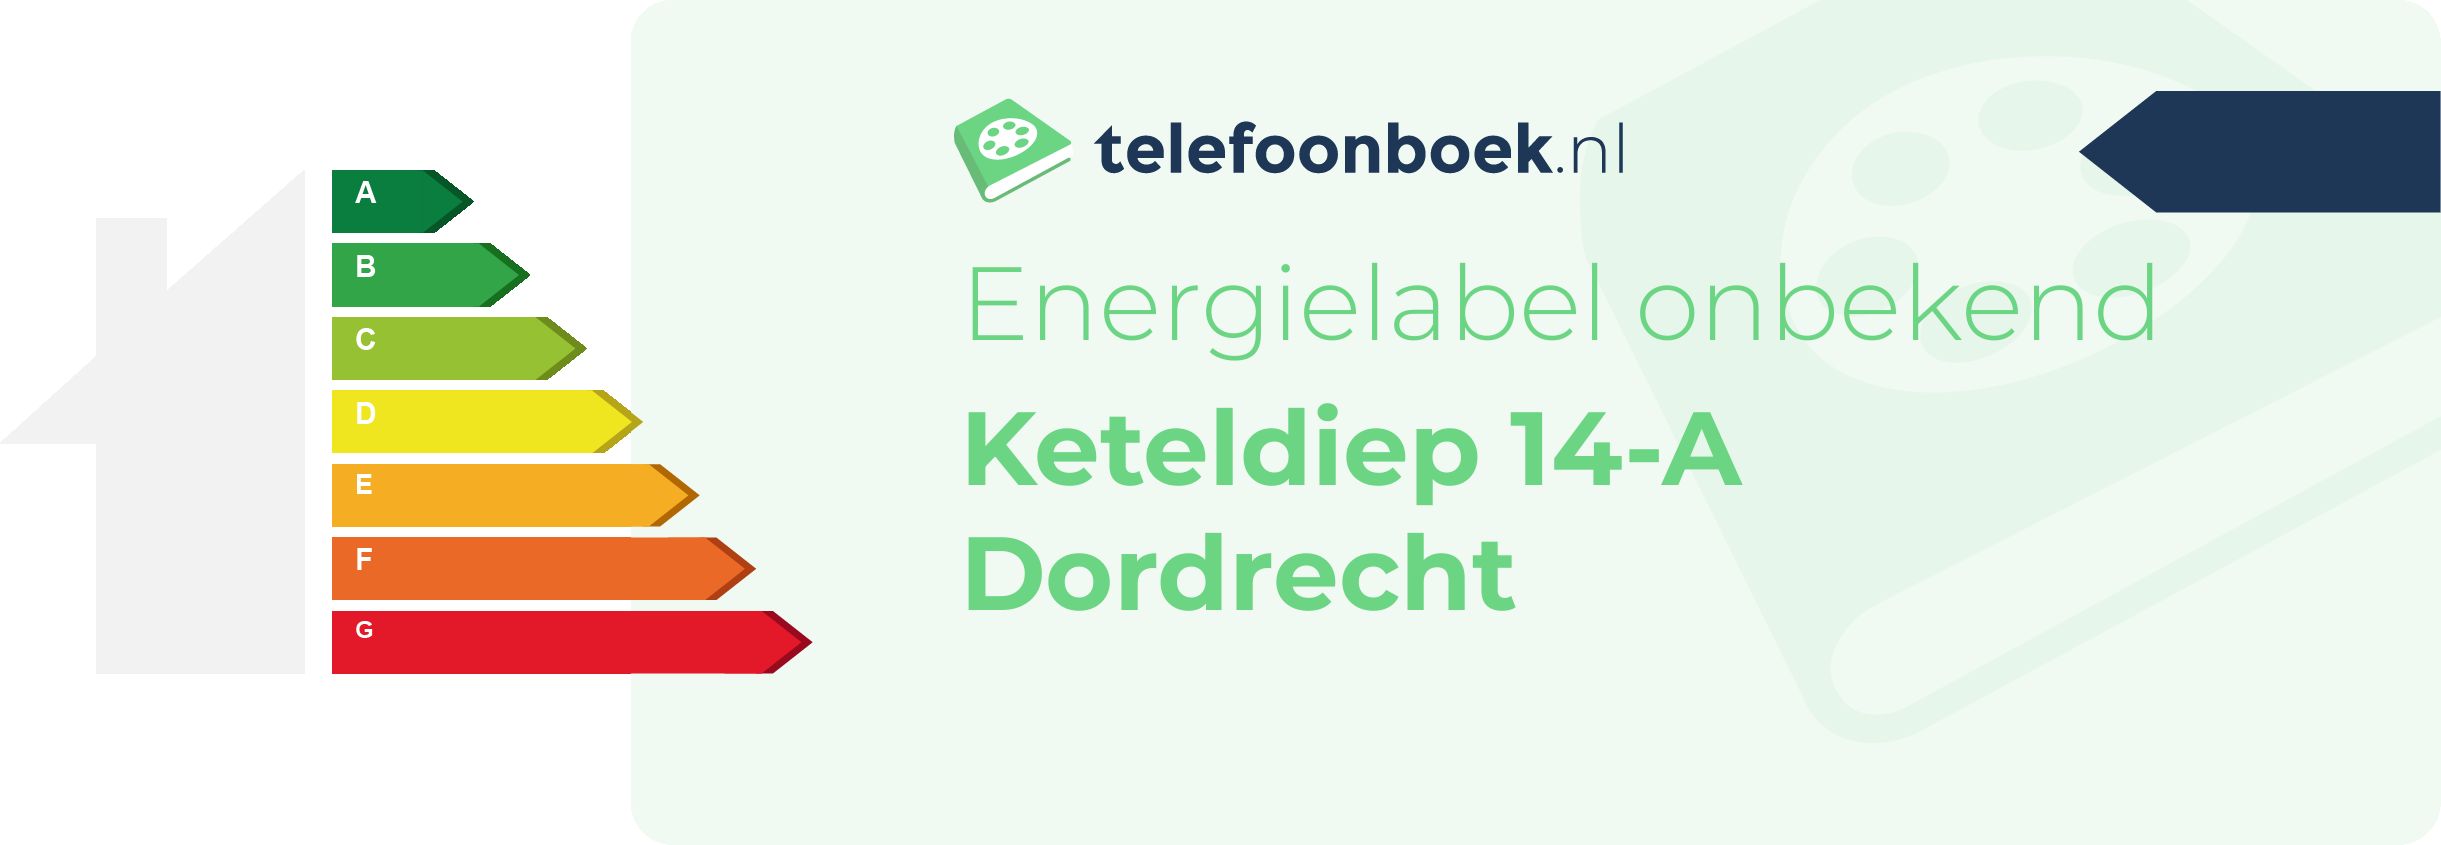 Energielabel Keteldiep 14-A Dordrecht